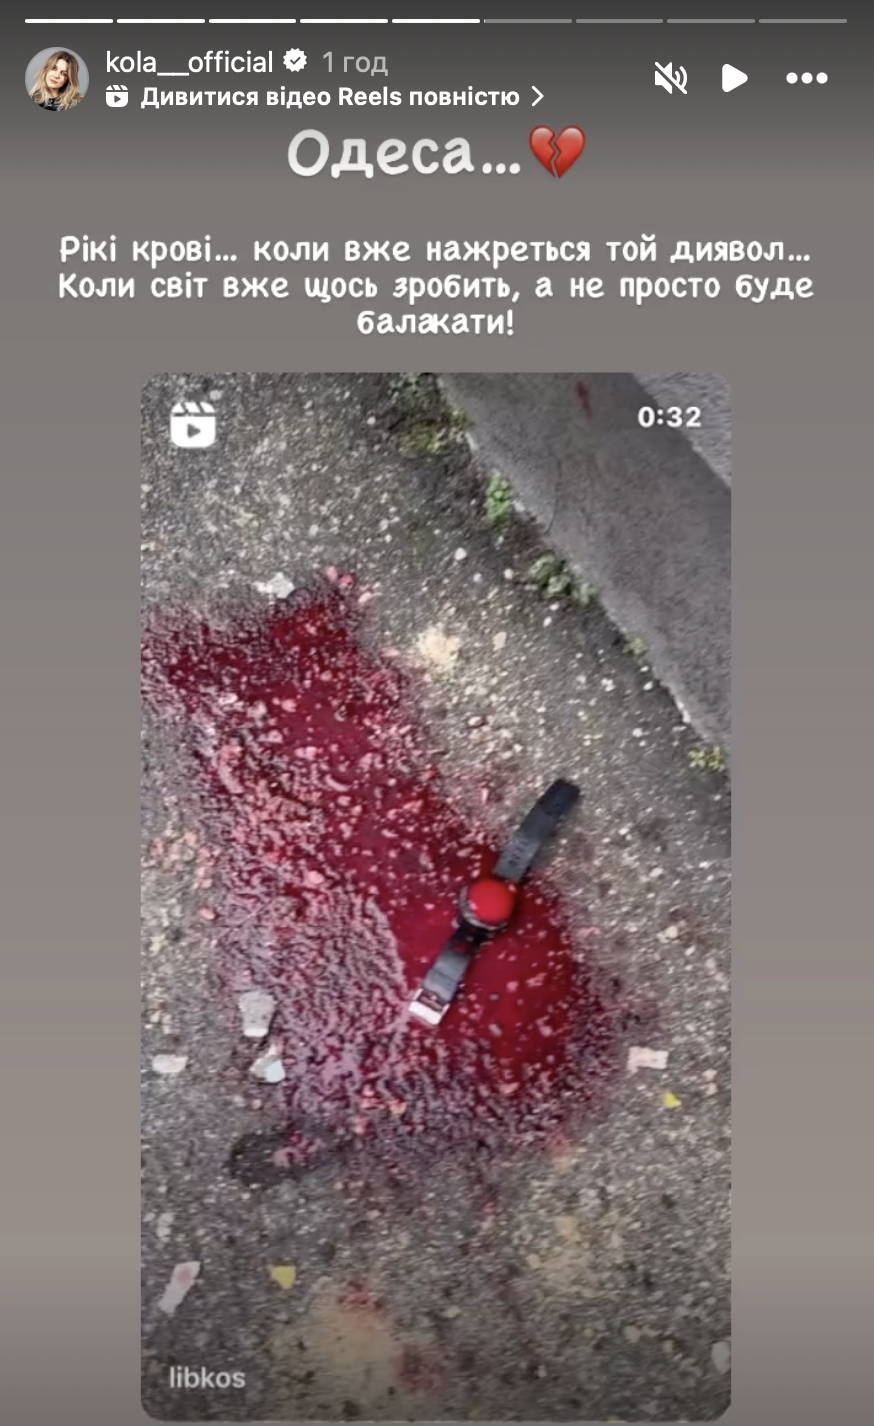 "Коли вже нажереться той диявол?!" Українські зірки з болем і ненавистю відреагували на ракетну атаку Росії по Одесі